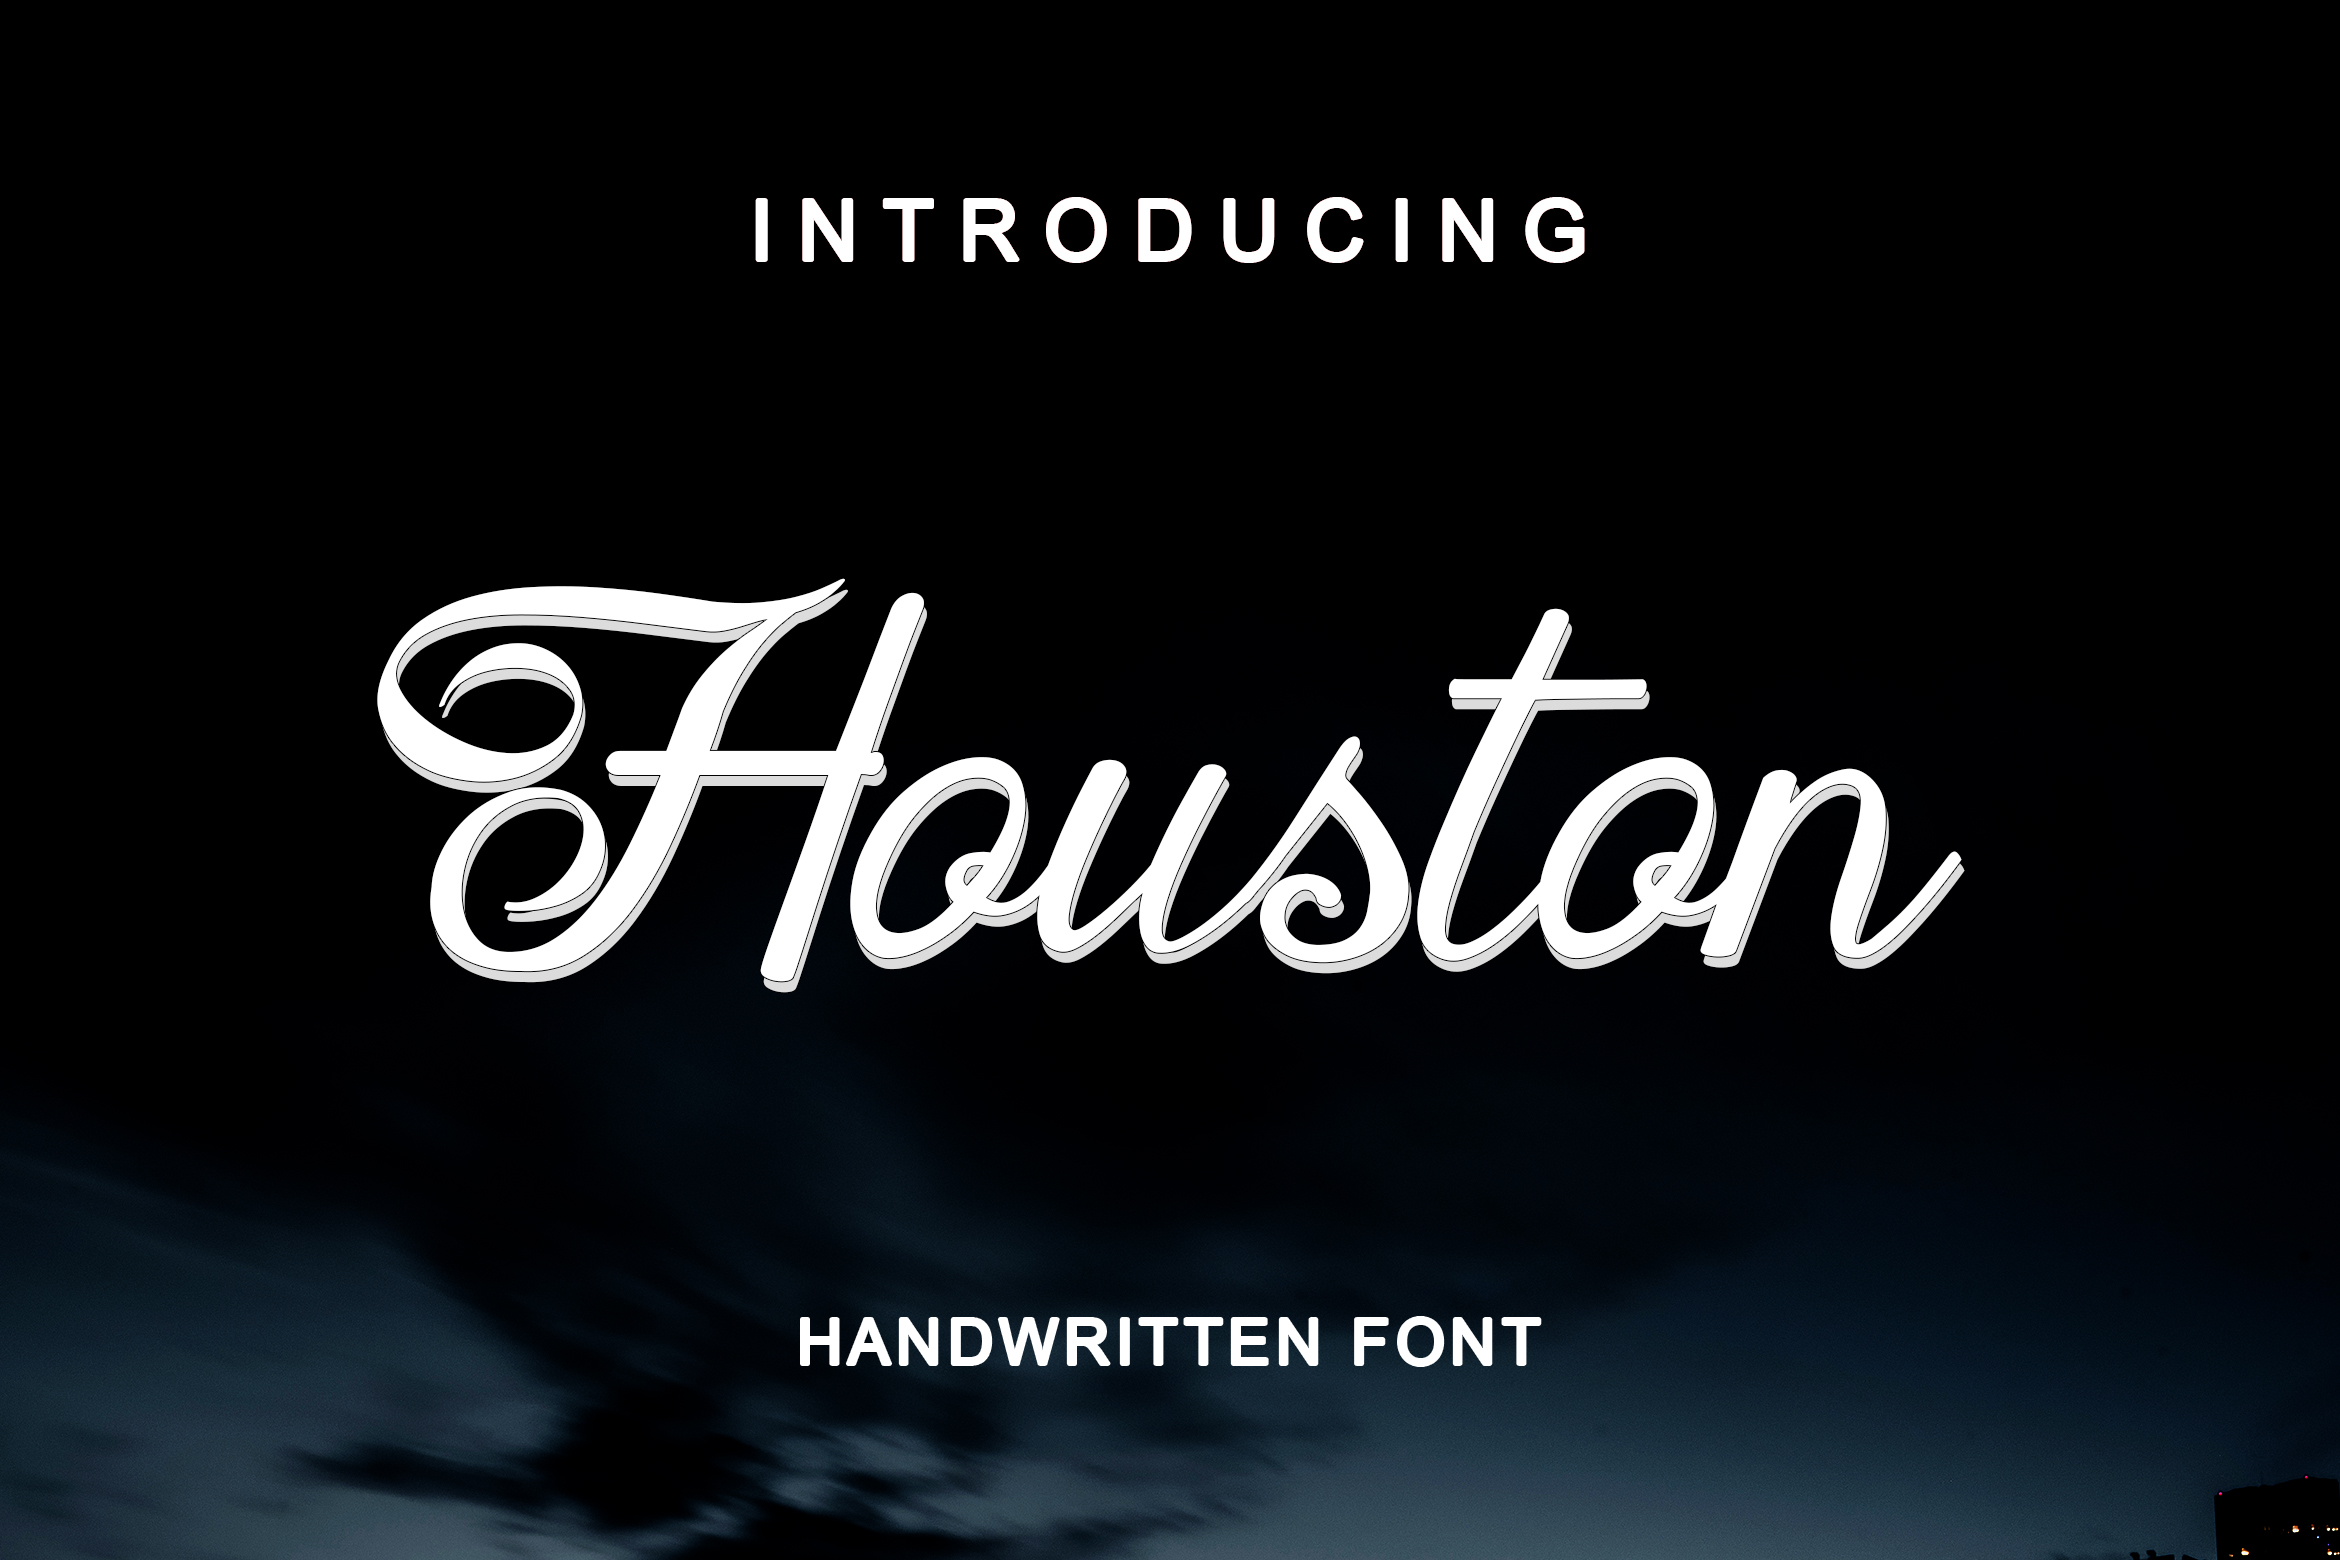 时尚优雅休斯敦手写刷子字体 Houston Handwritten Font插图